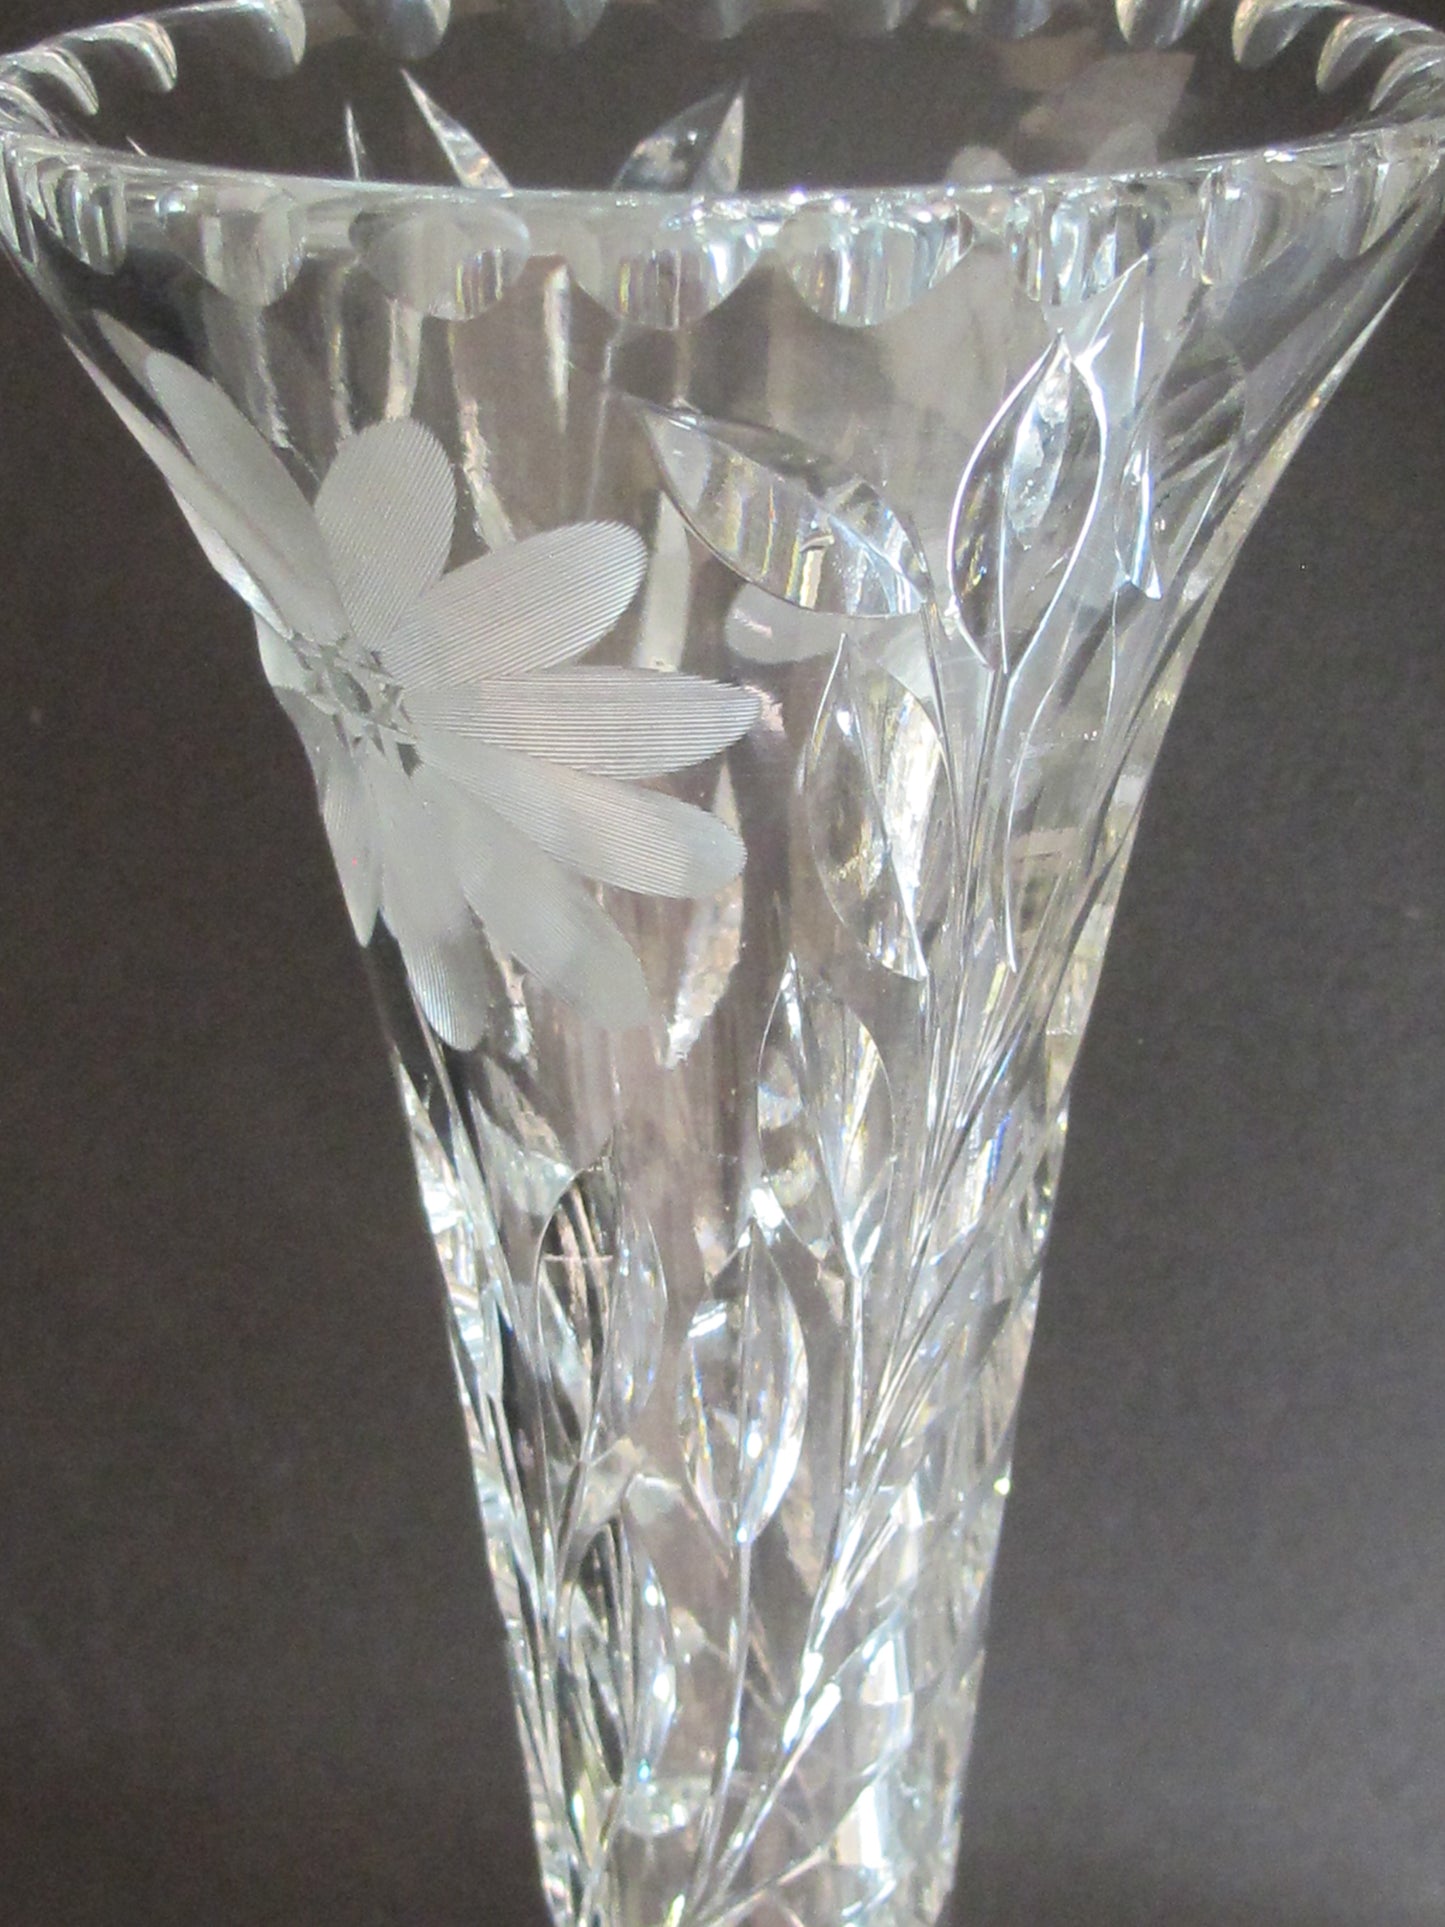 Cut glass trumpet vase antique 12"